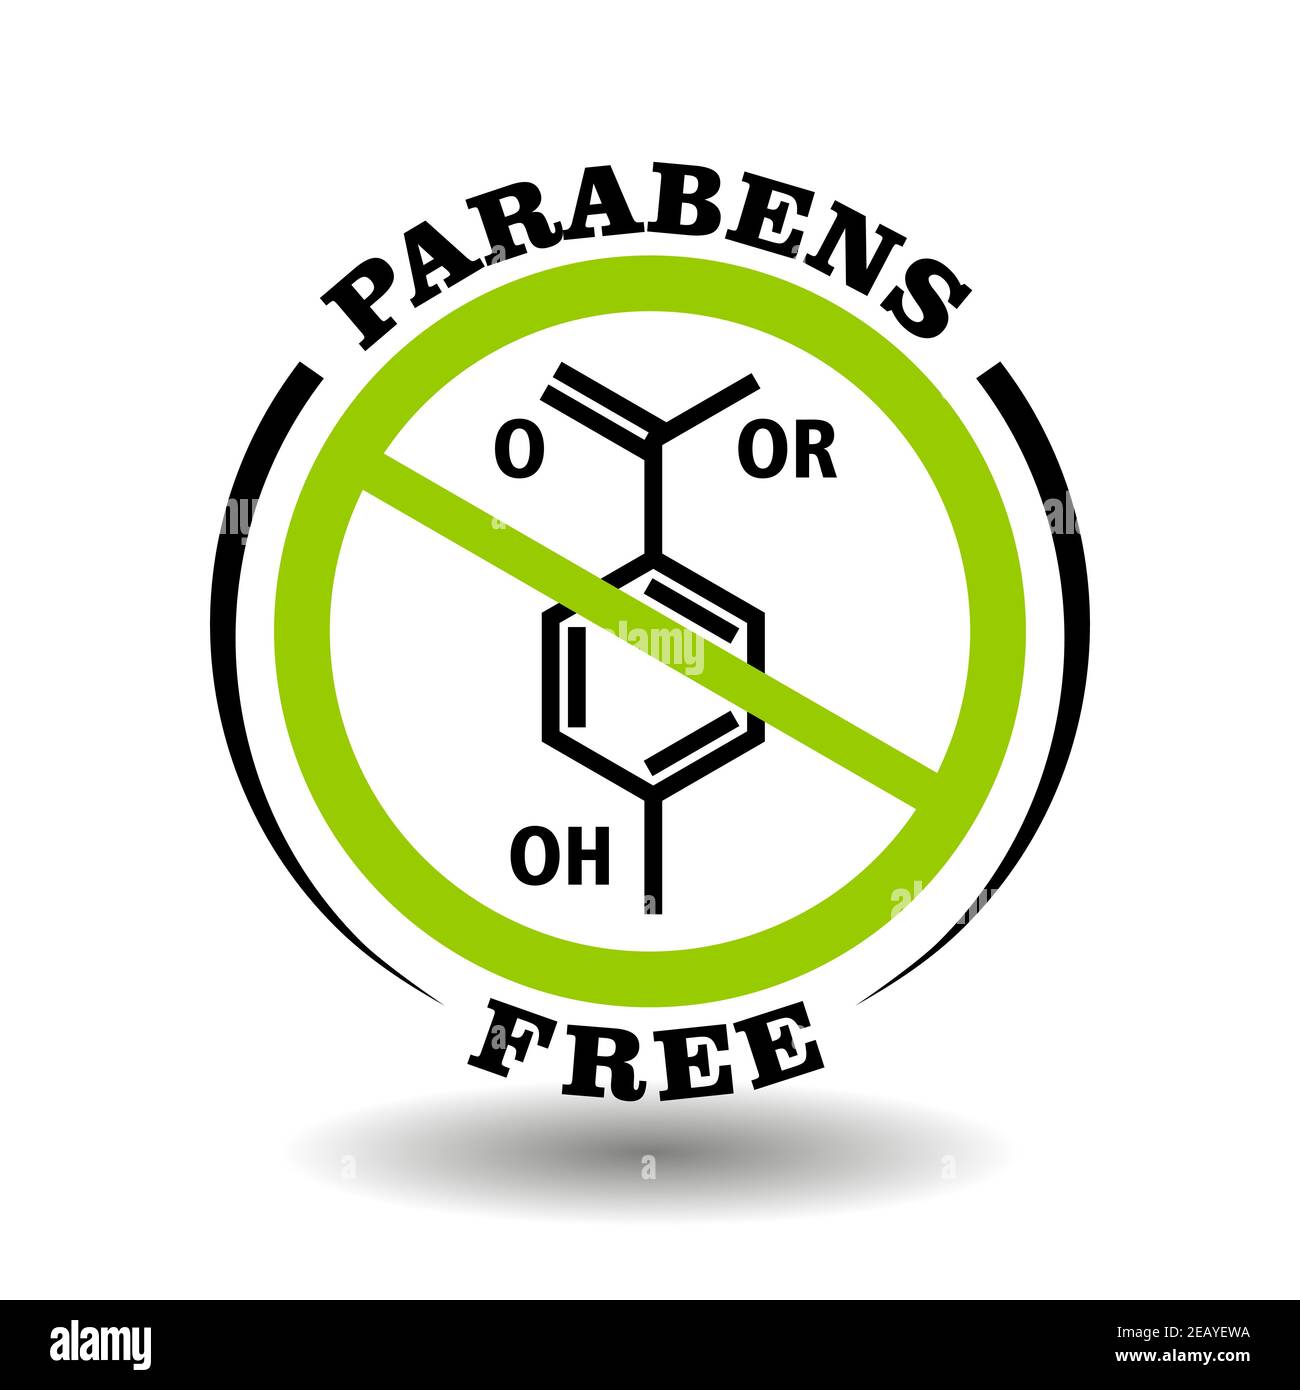 Tampon vectoriel interdit Parabens gratuit pour l'emballage naturel. Signe rond pas d'additifs de paraben dans les produits biologiques sains Illustration de Vecteur